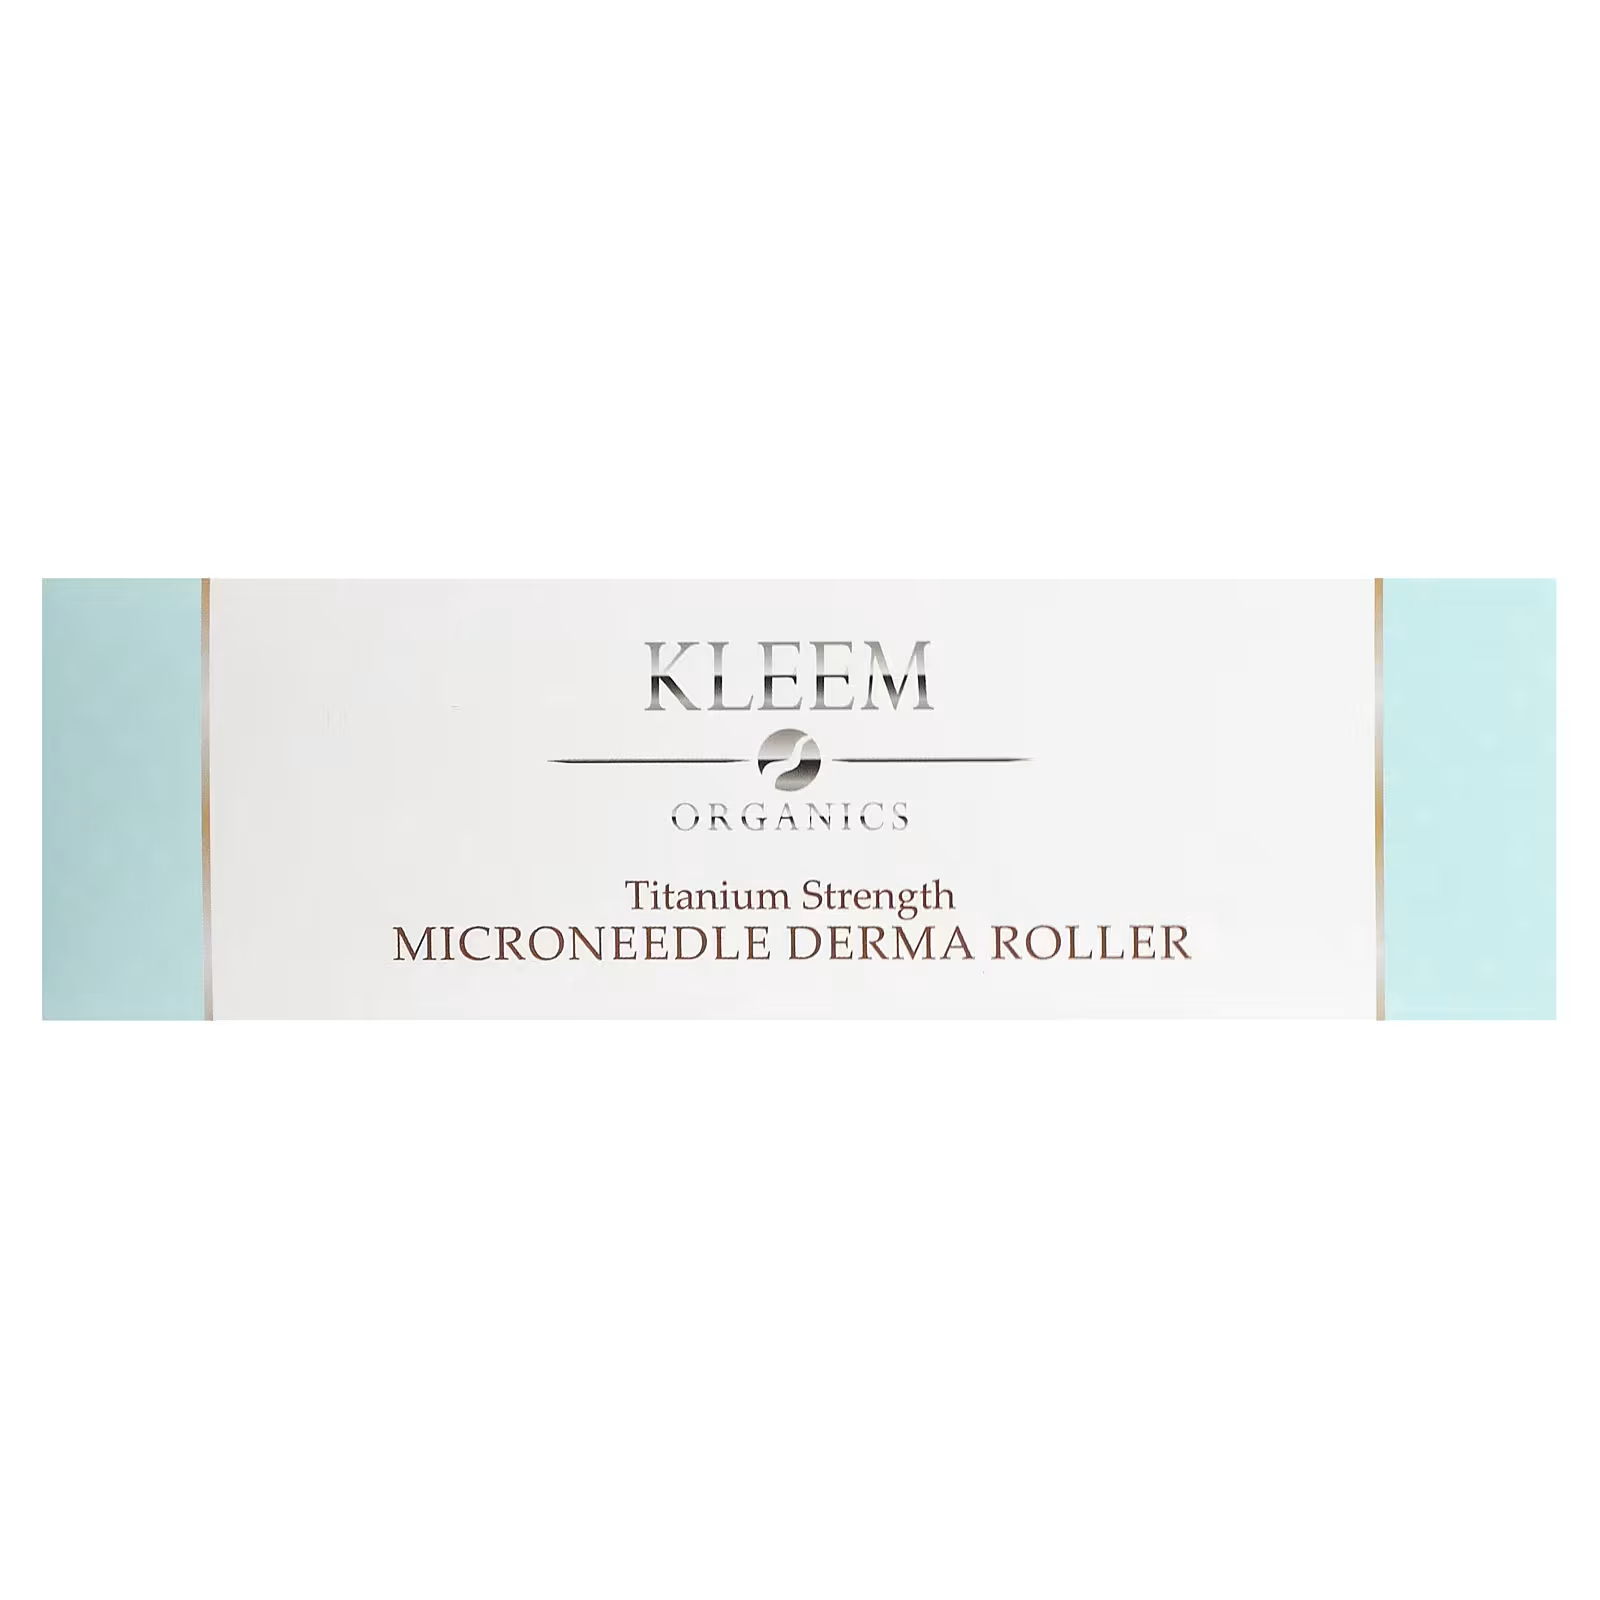 Ролик дерматологический Kleem Organics Microneedle Derma Roller Titanium Strength цена и фото